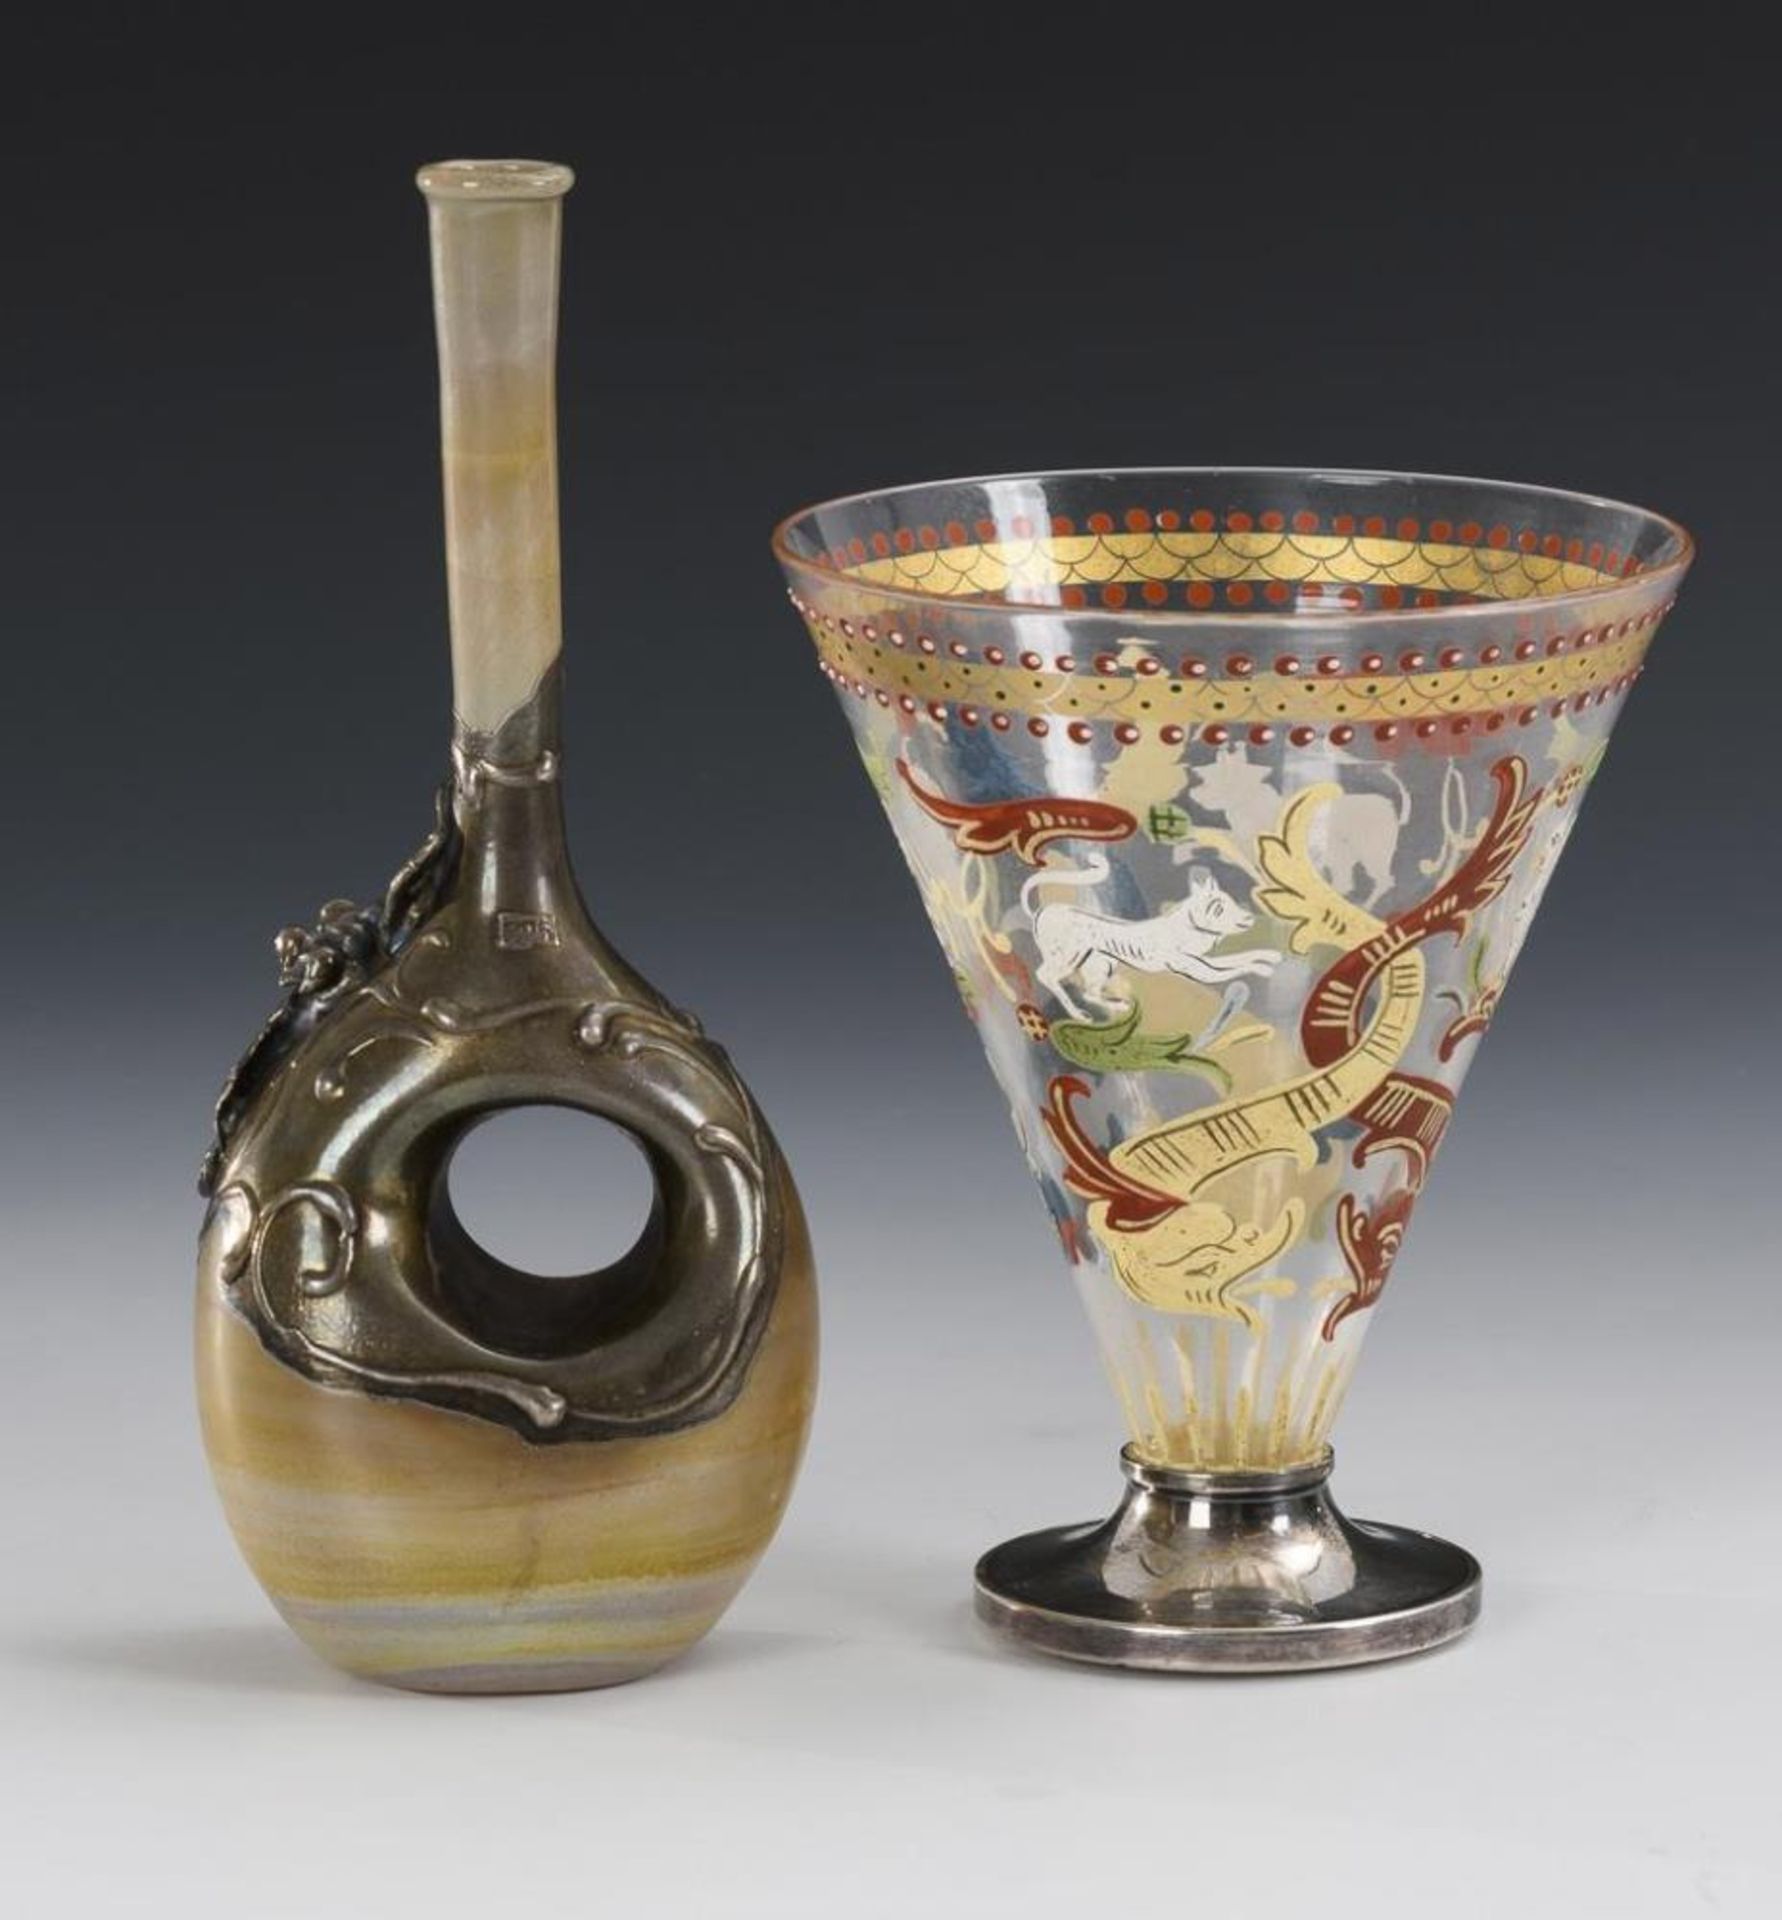 Glas und Vase mit Silbermontierung. - Image 2 of 2